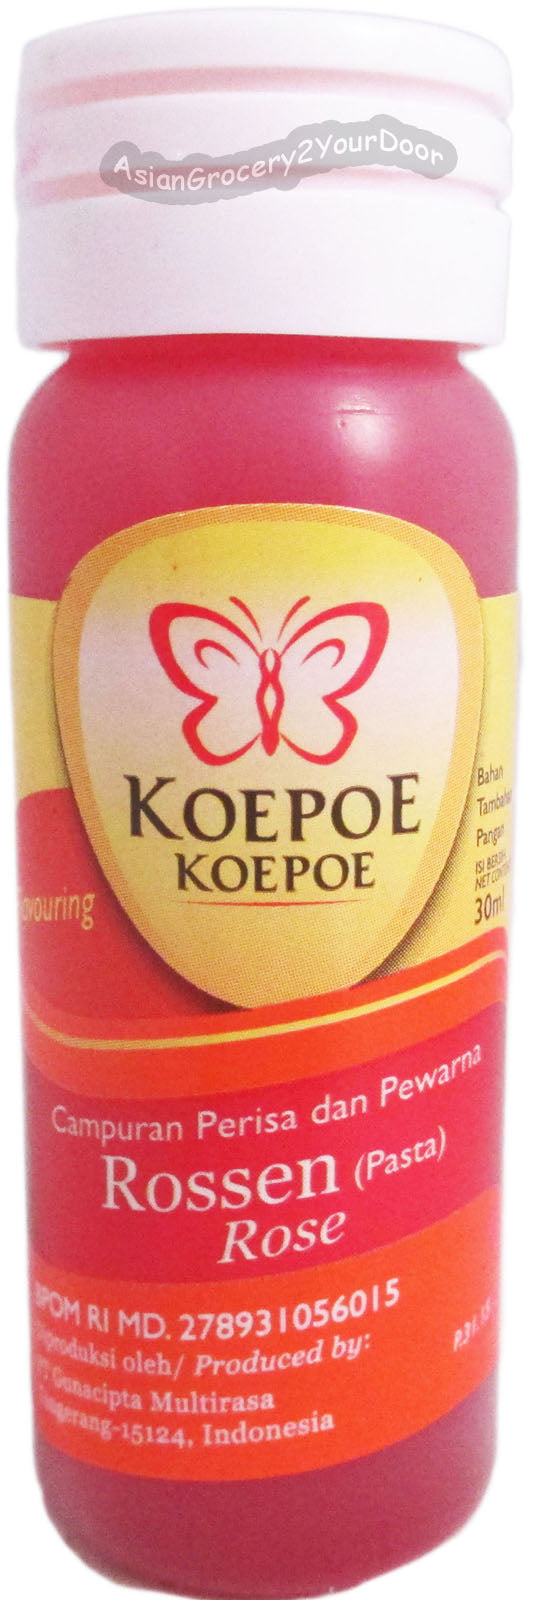 Koepoe Koepoe - Rossen Pasta Rose Flavoring - 1 fl oz / 30 ml - Asiangrocery2yourdoor